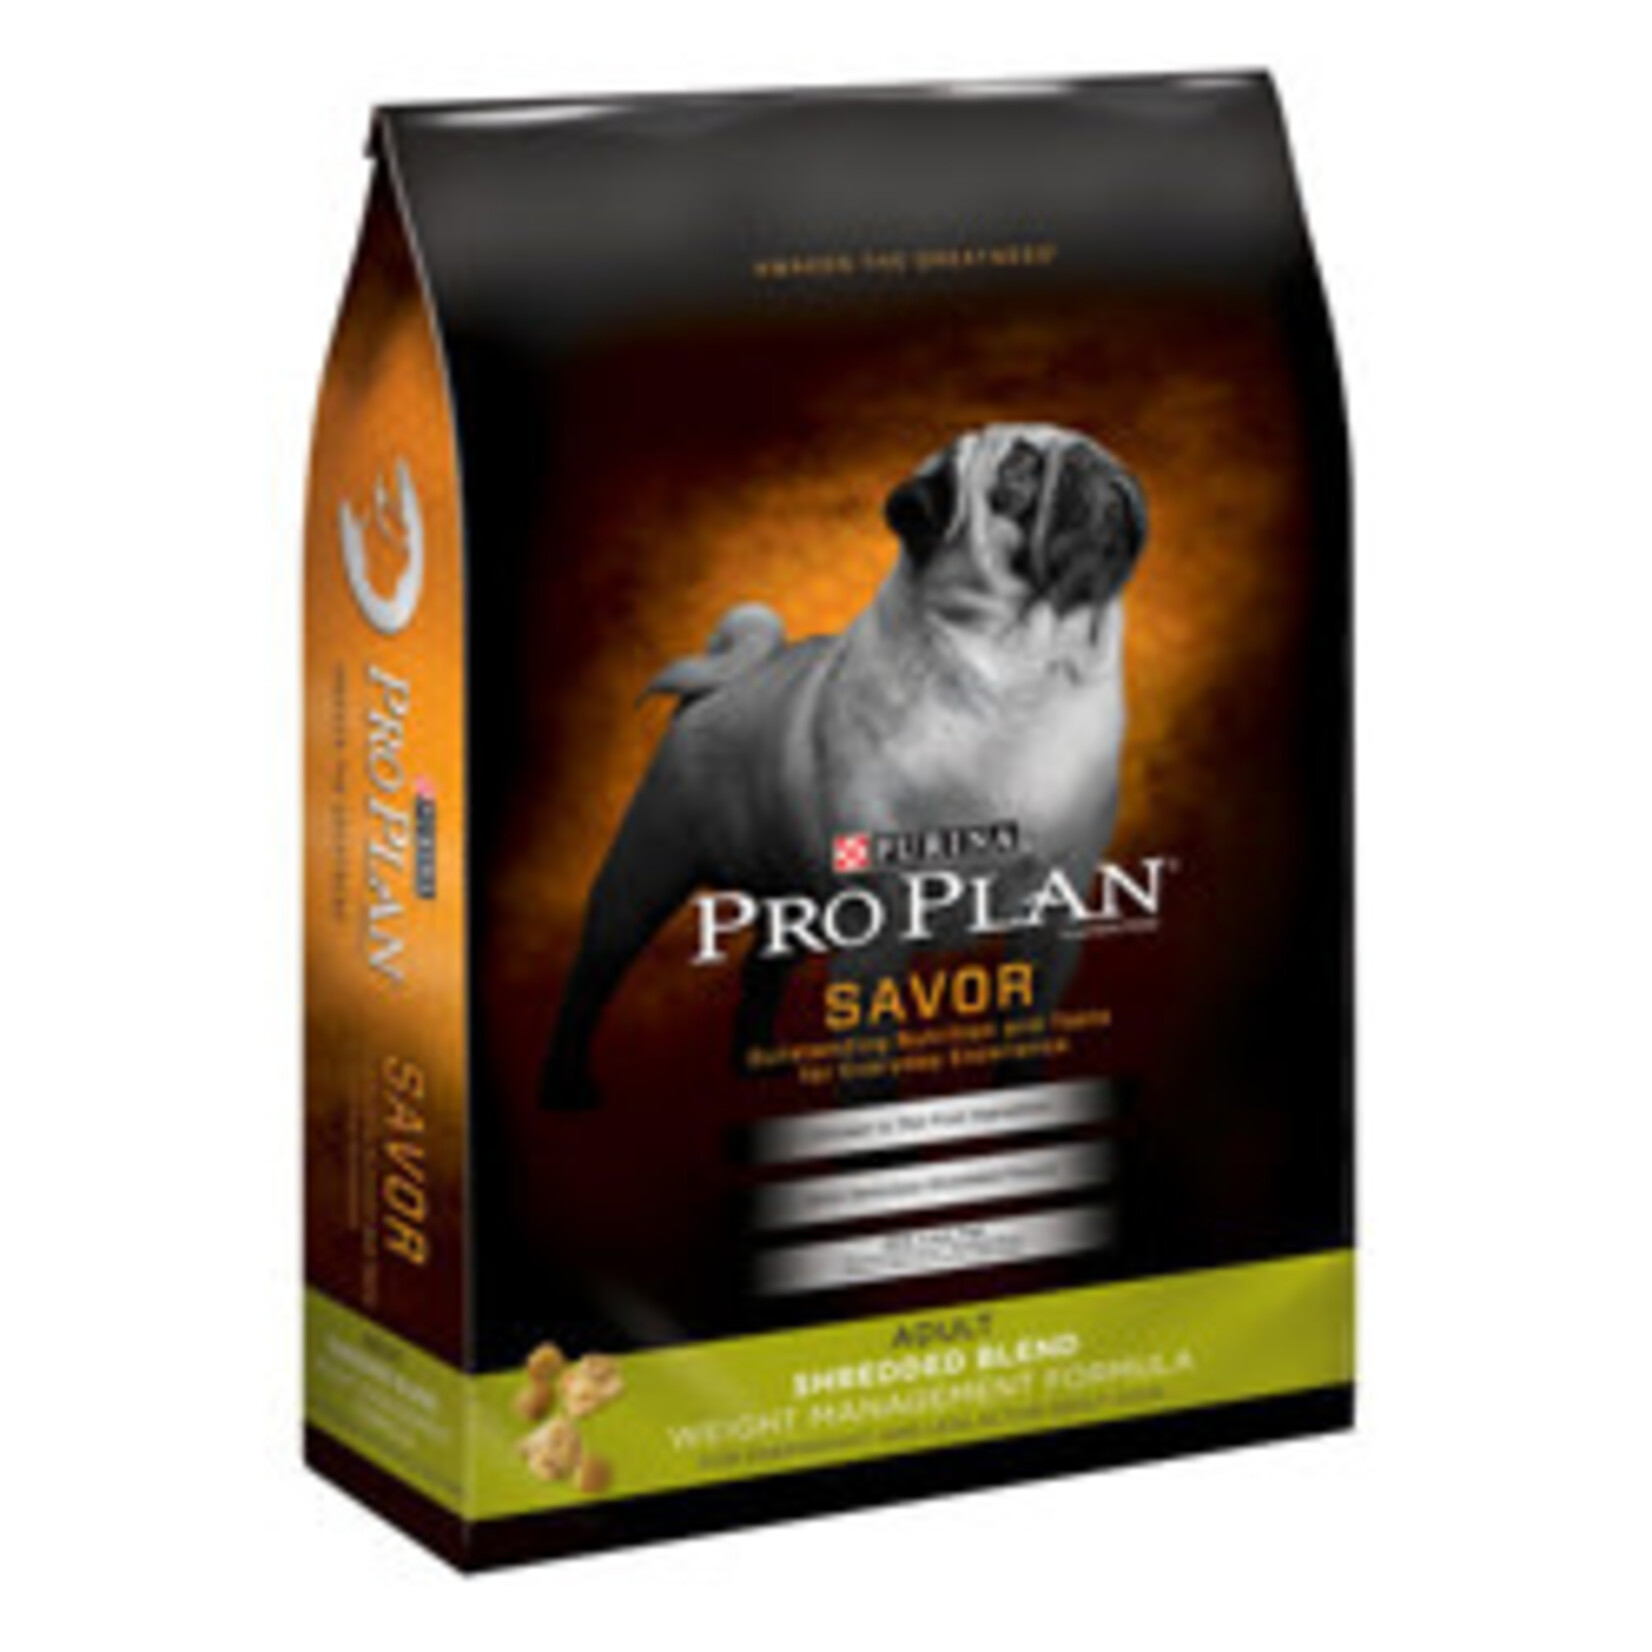 Pro Plan Pro Plan Shredded Blend Weight Management Dog Food